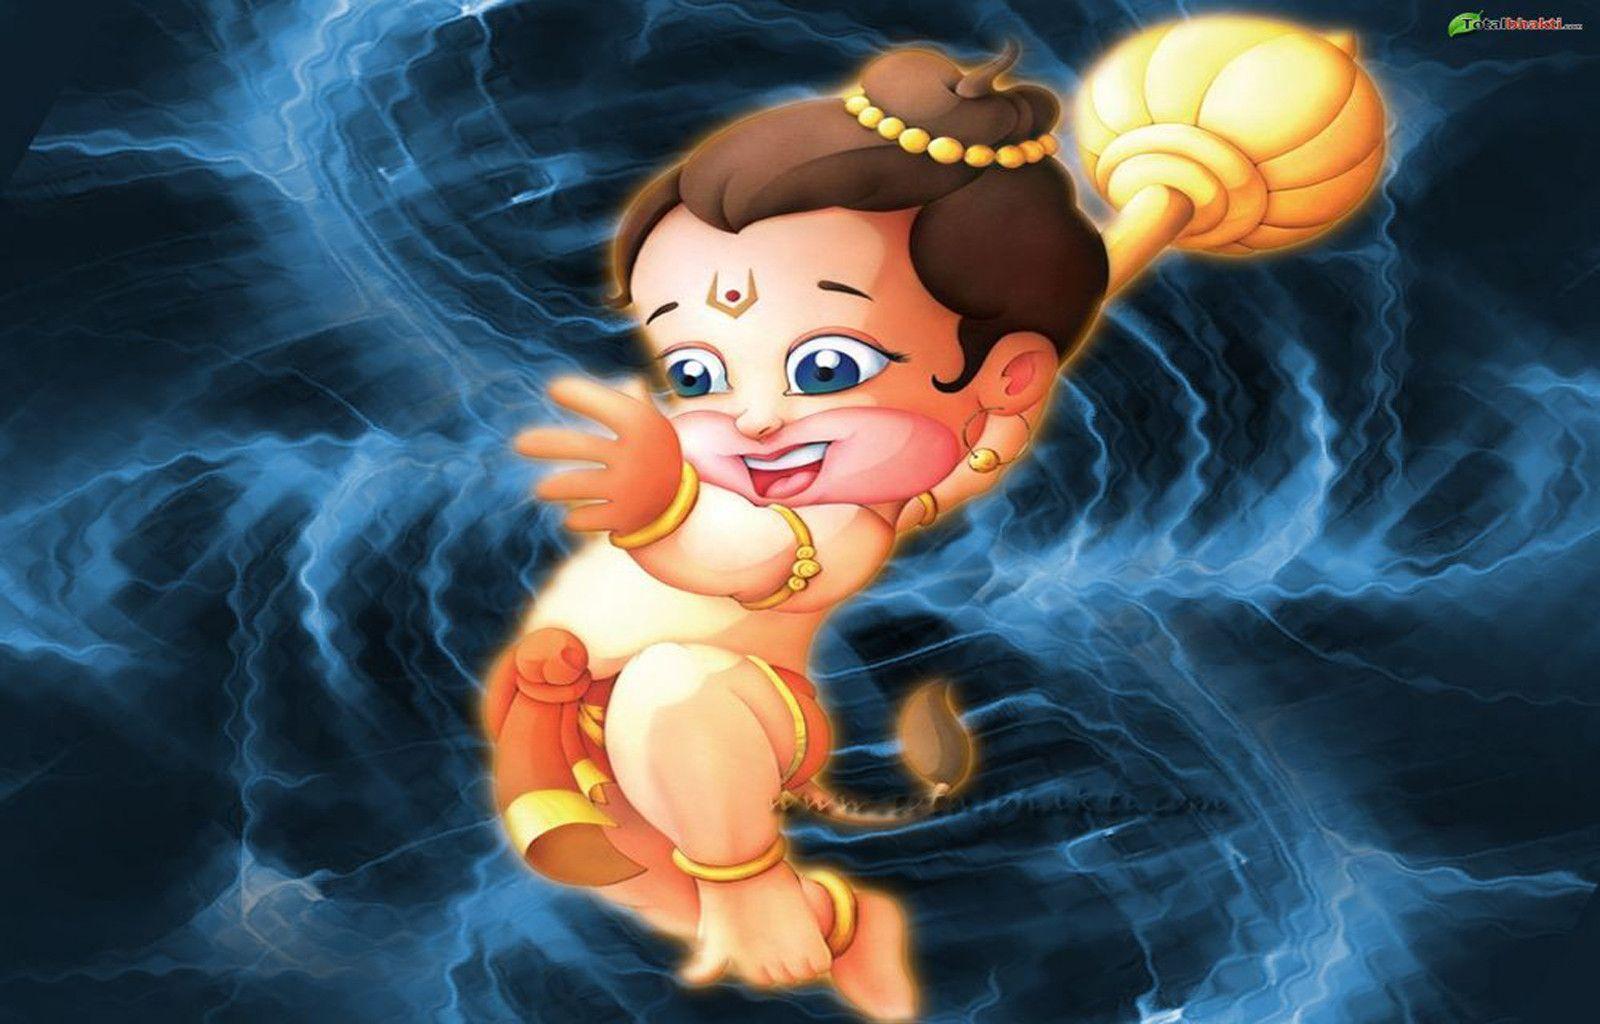 Animated Hanuman Wallpapers - Wallpaper Cave